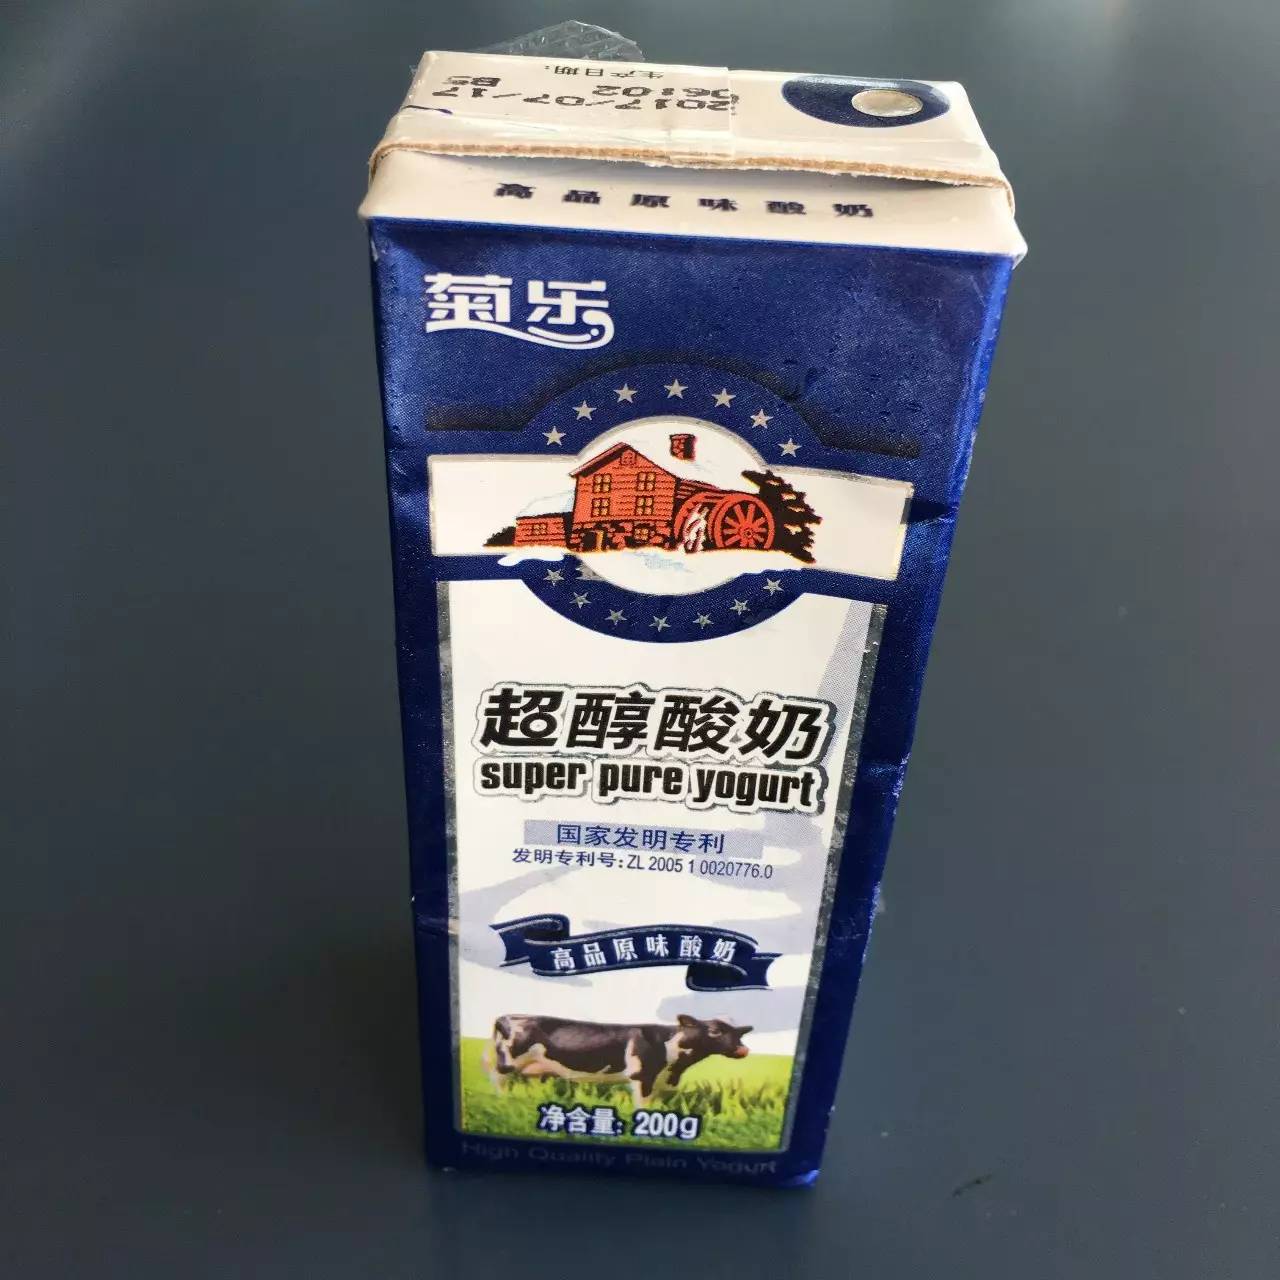 菊乐超醇酸奶 价格:3